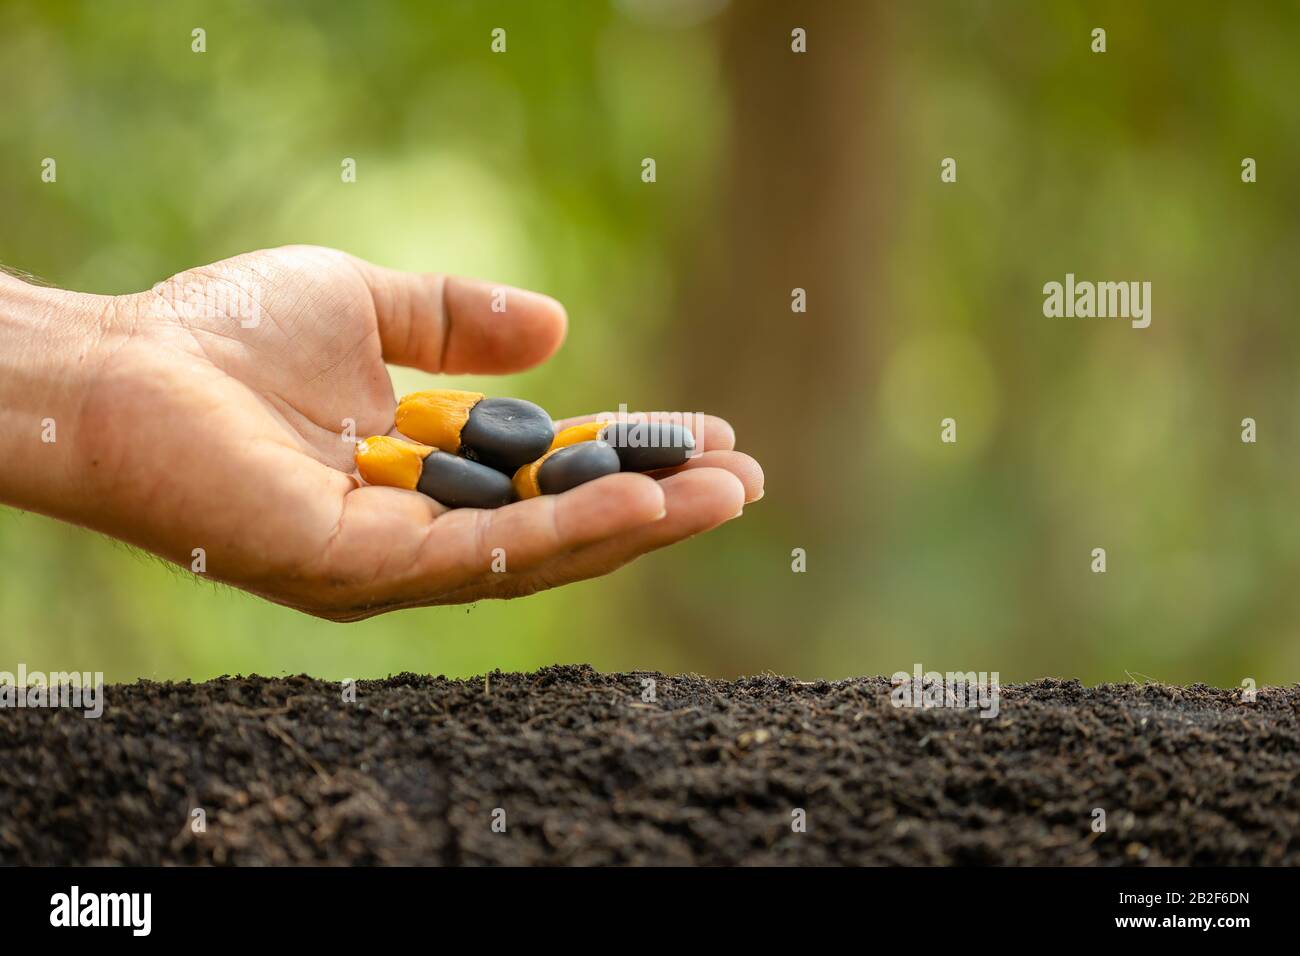 Gros plan main de l'agriculteur plantant une graine noire d'Afzelia, Doussie ou Makha mong arbre dans le sol. Concept de croissance et d'environnement Banque D'Images